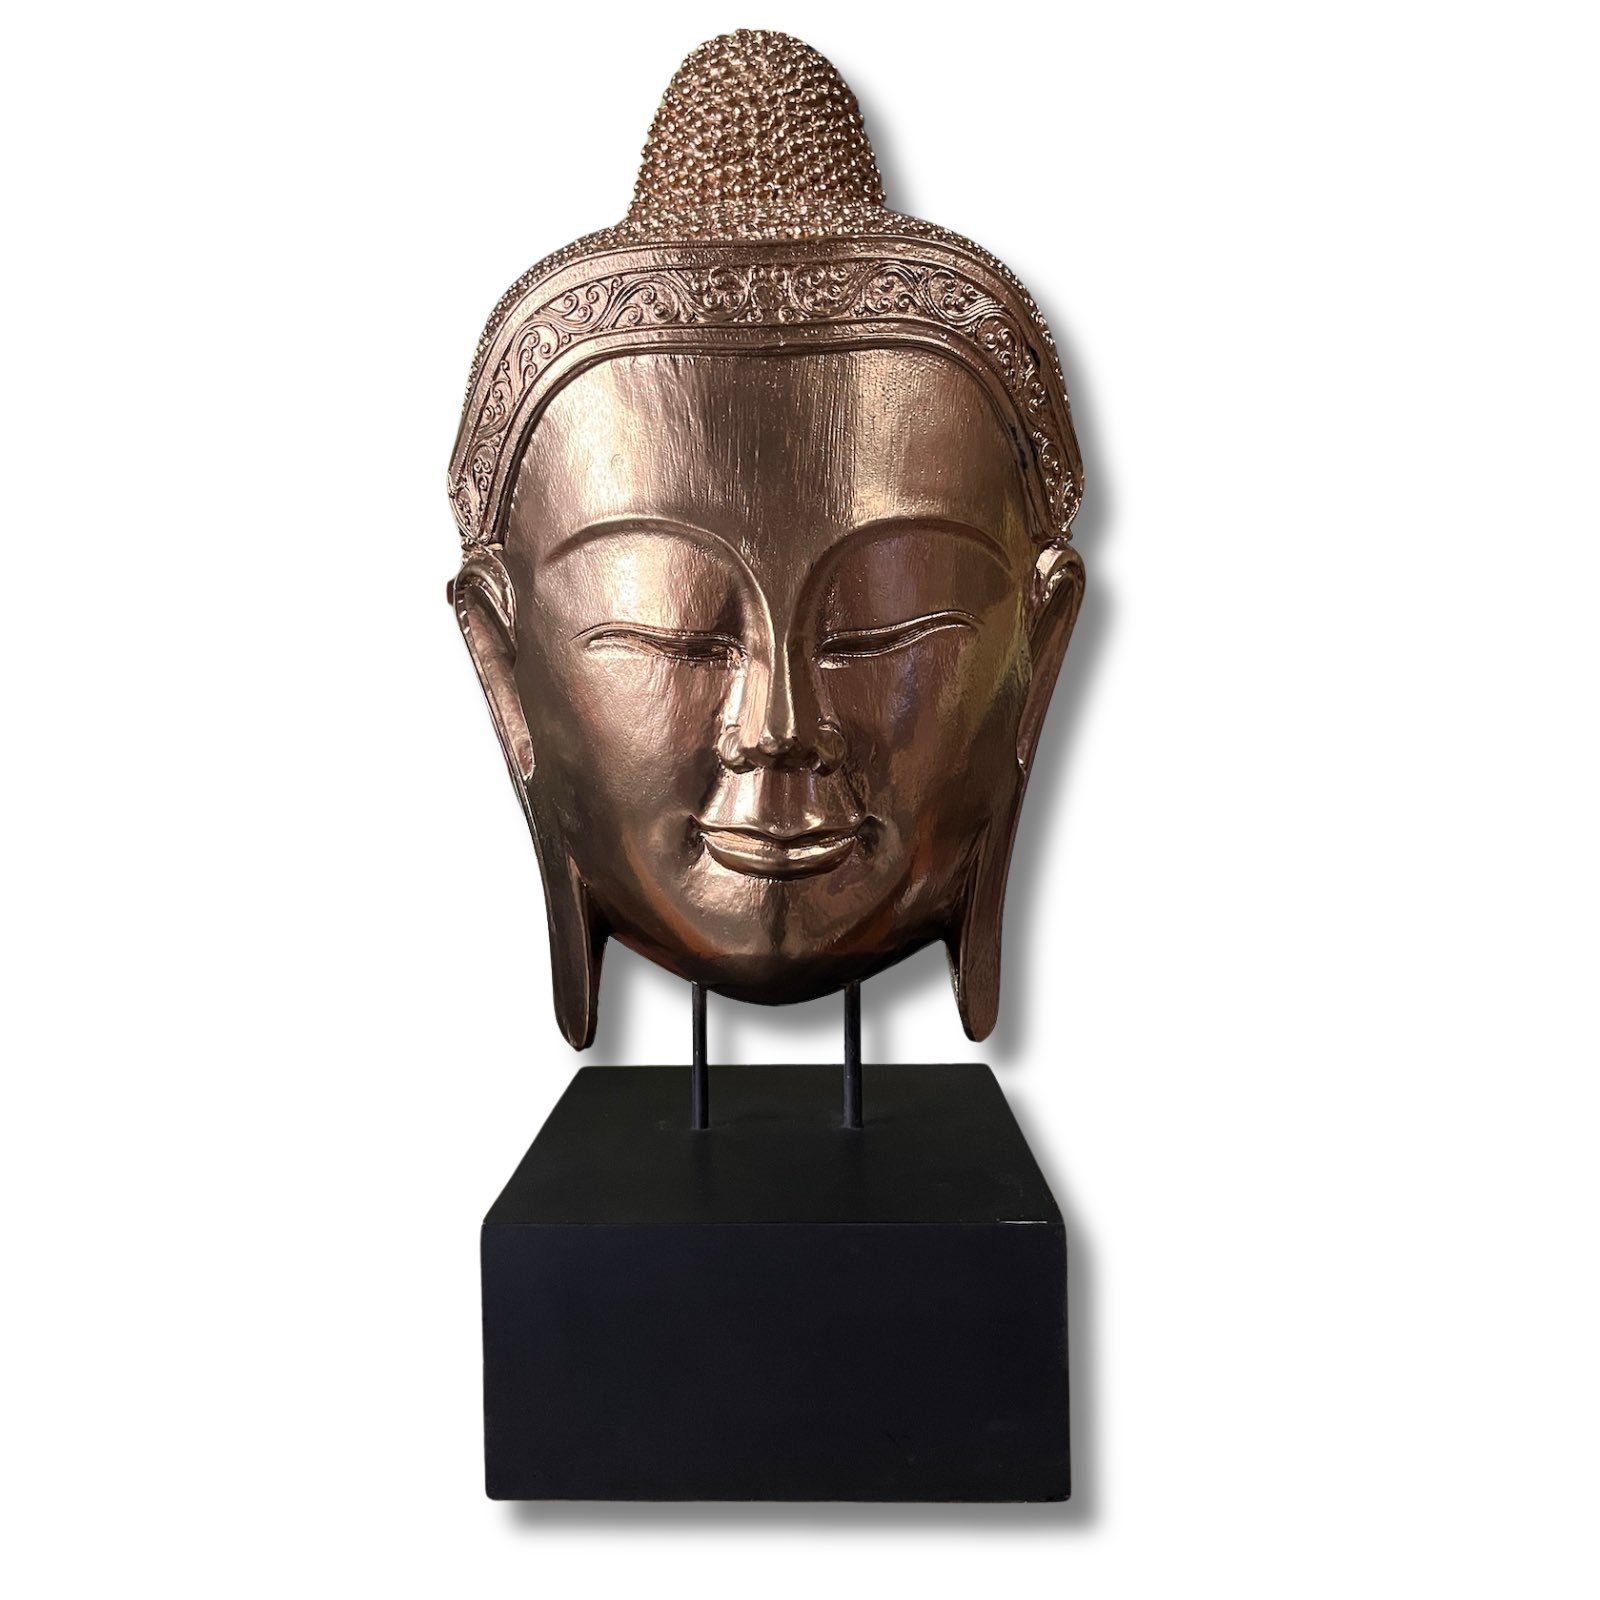 Asien LifeStyle Buddhafigur Buddha Kopf Thailand Holz Skulptur - 66cm groß | Dekofiguren